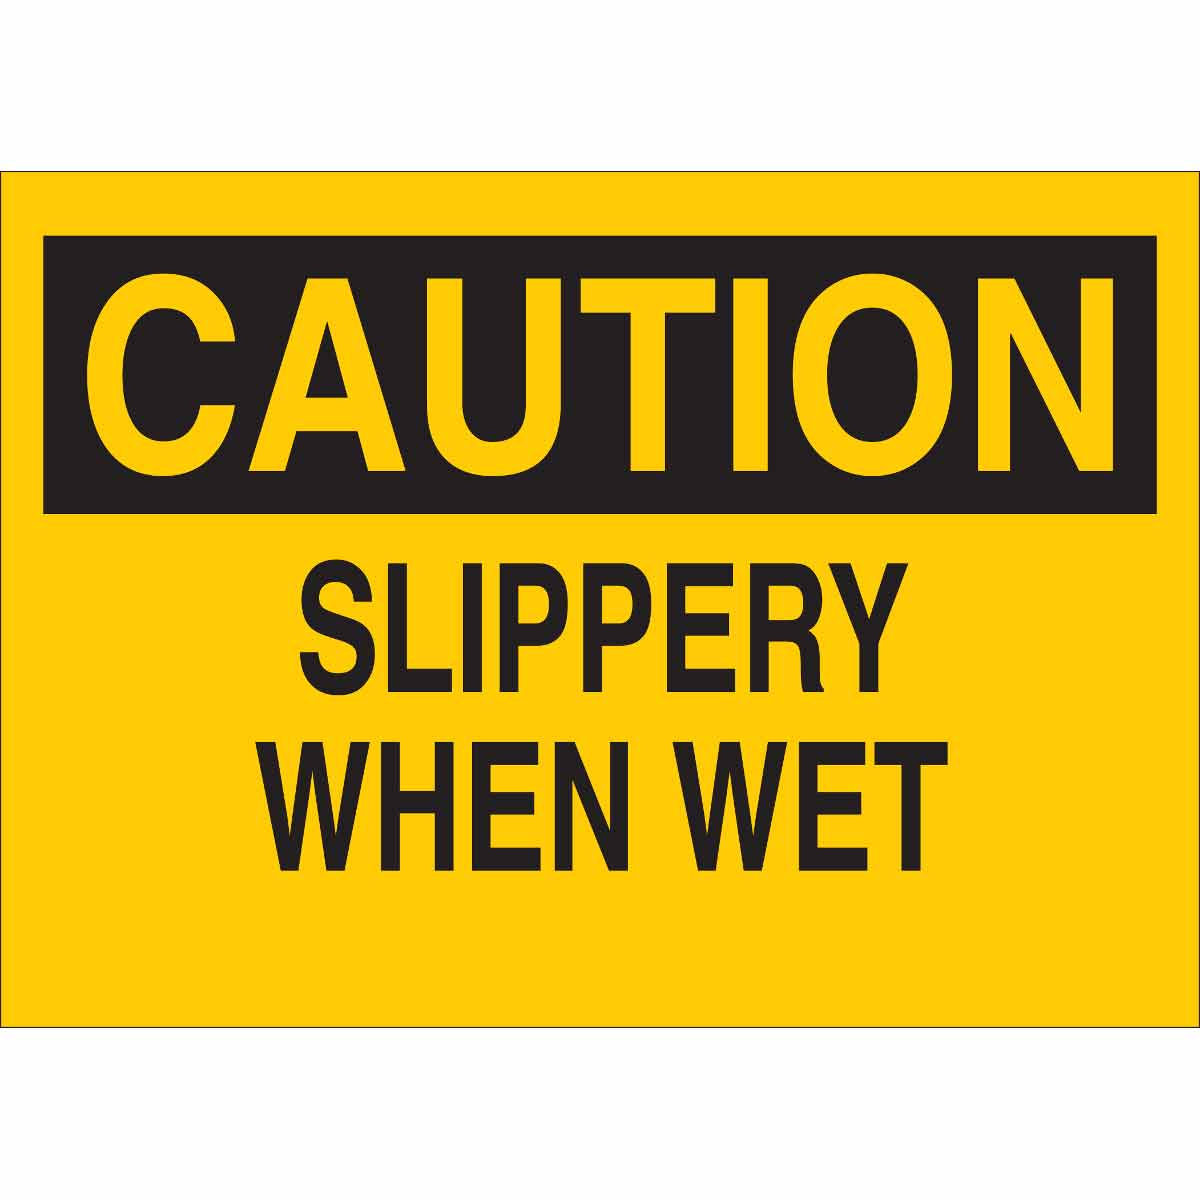 Floor Slippery When Wet Danger Sign 10 X 14 OSHA Safety Sign 